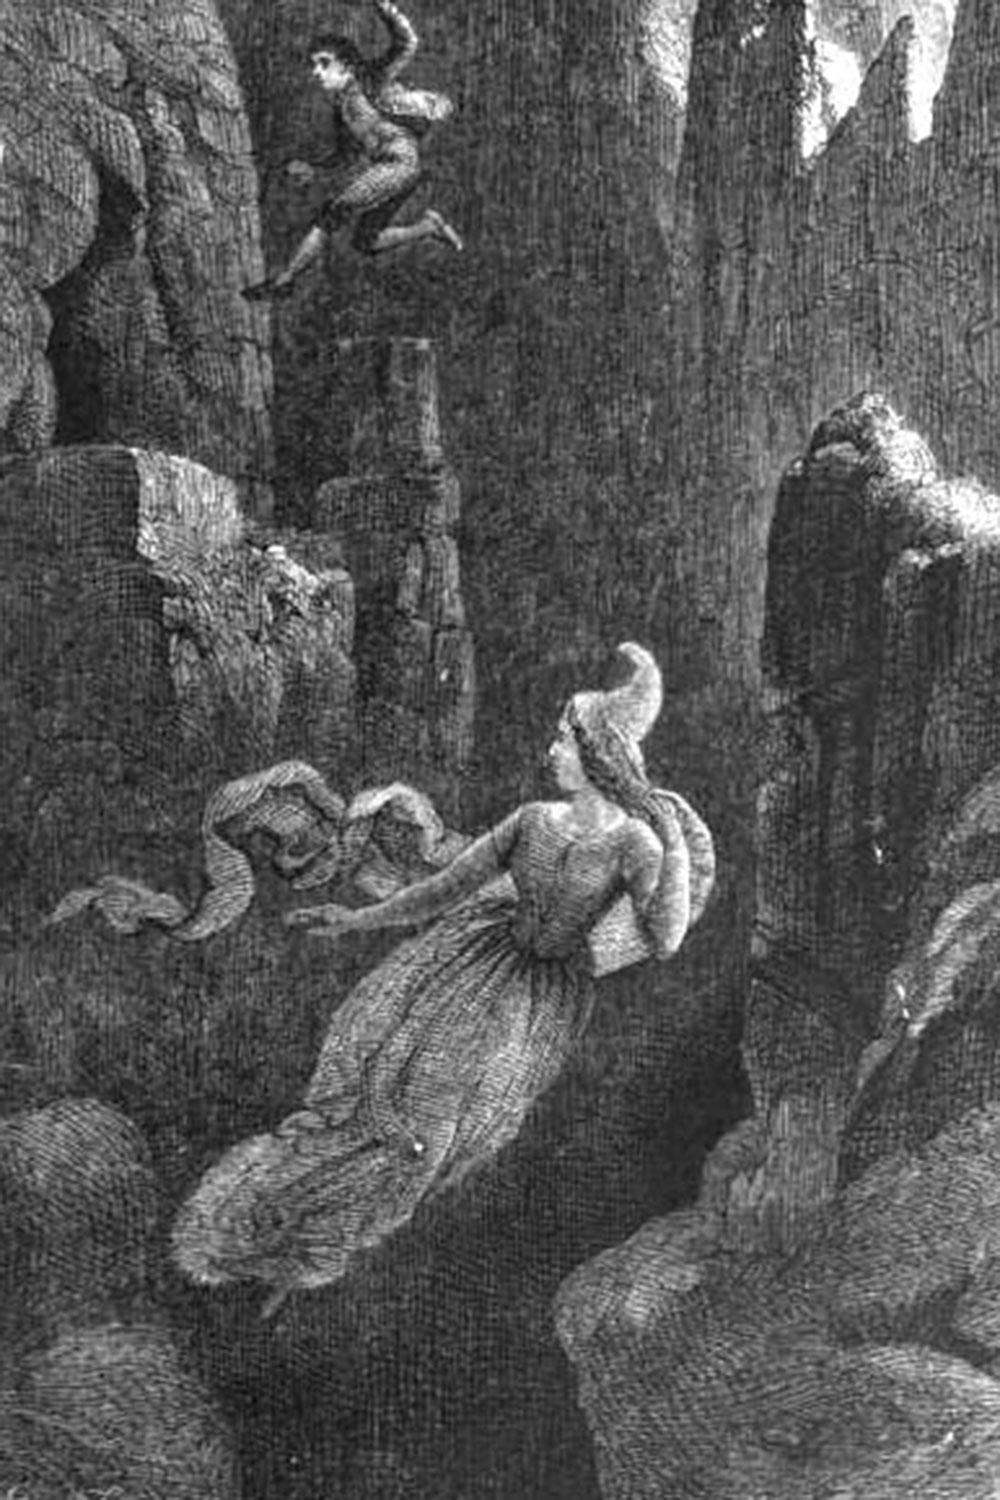 Älva i en illustration till den isländska legenden "Hildur, älvornas drottning”